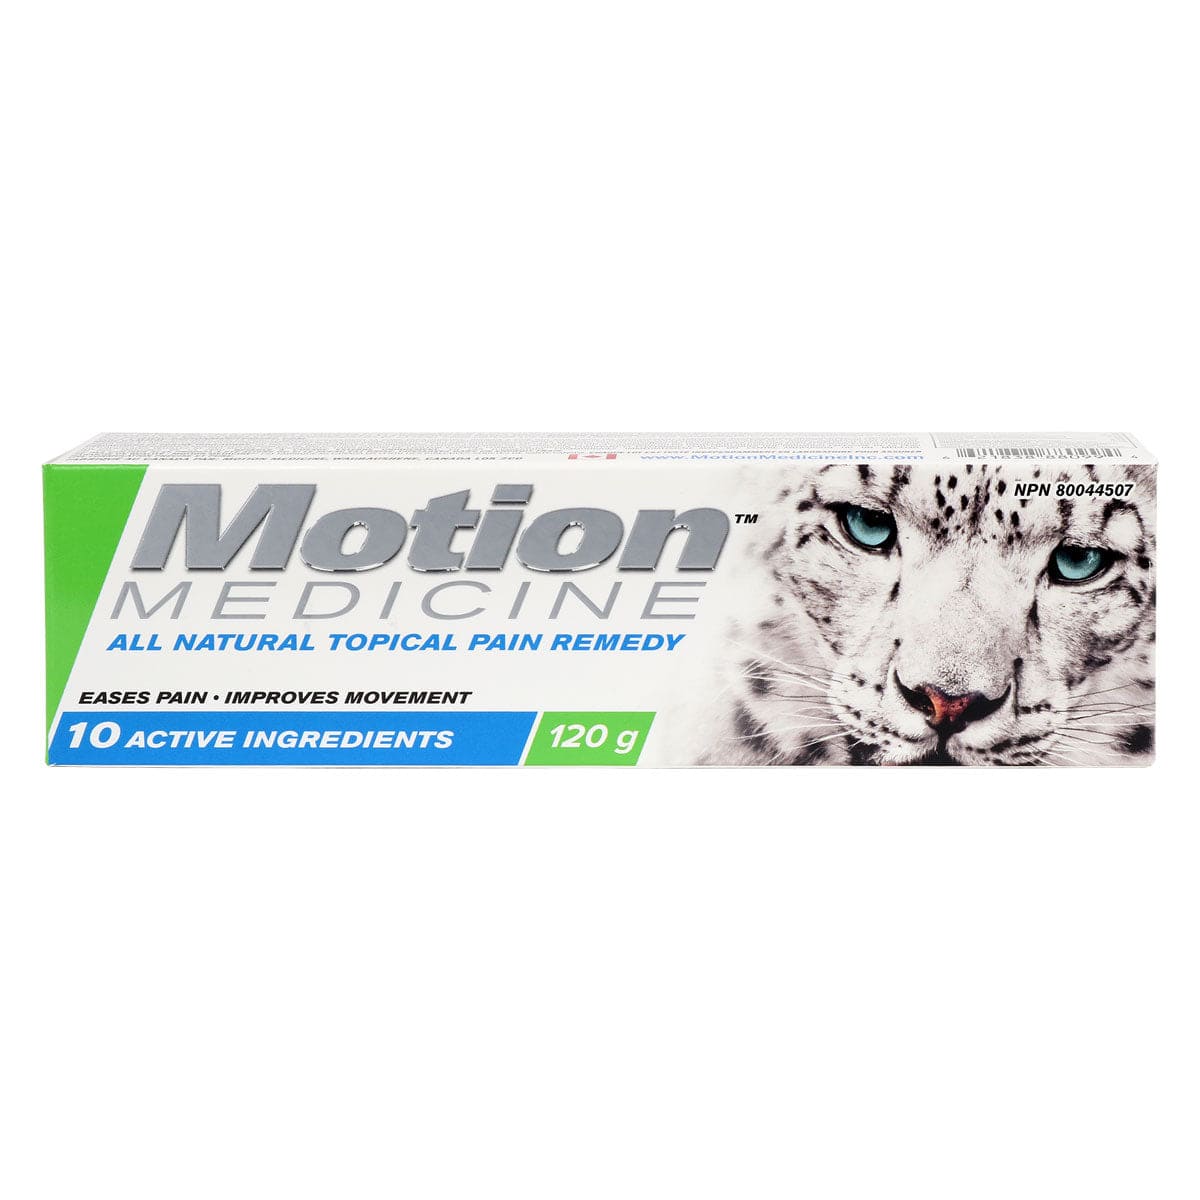 Motion Medicine 120 g tube